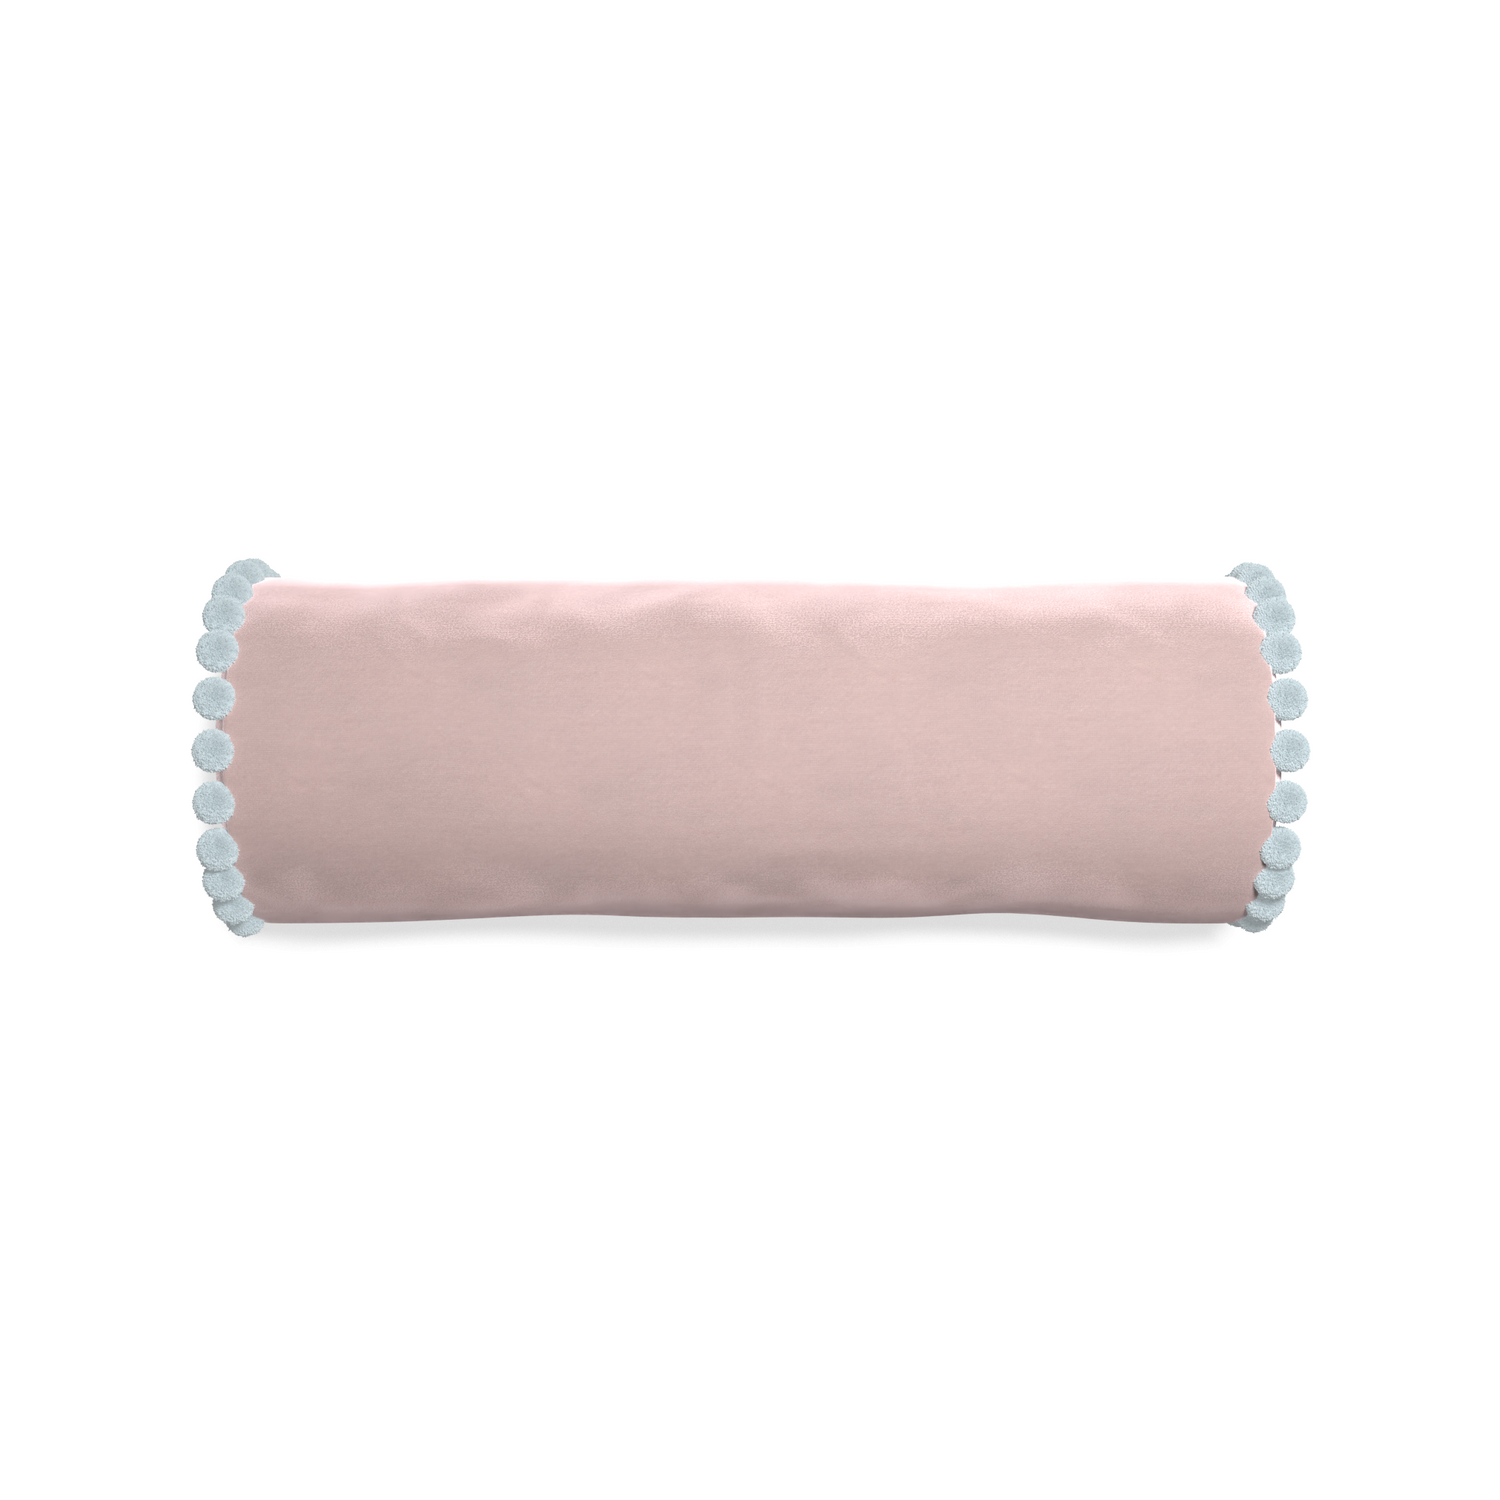 Bolster rose velvet custom pillow with powder pom pom on white background